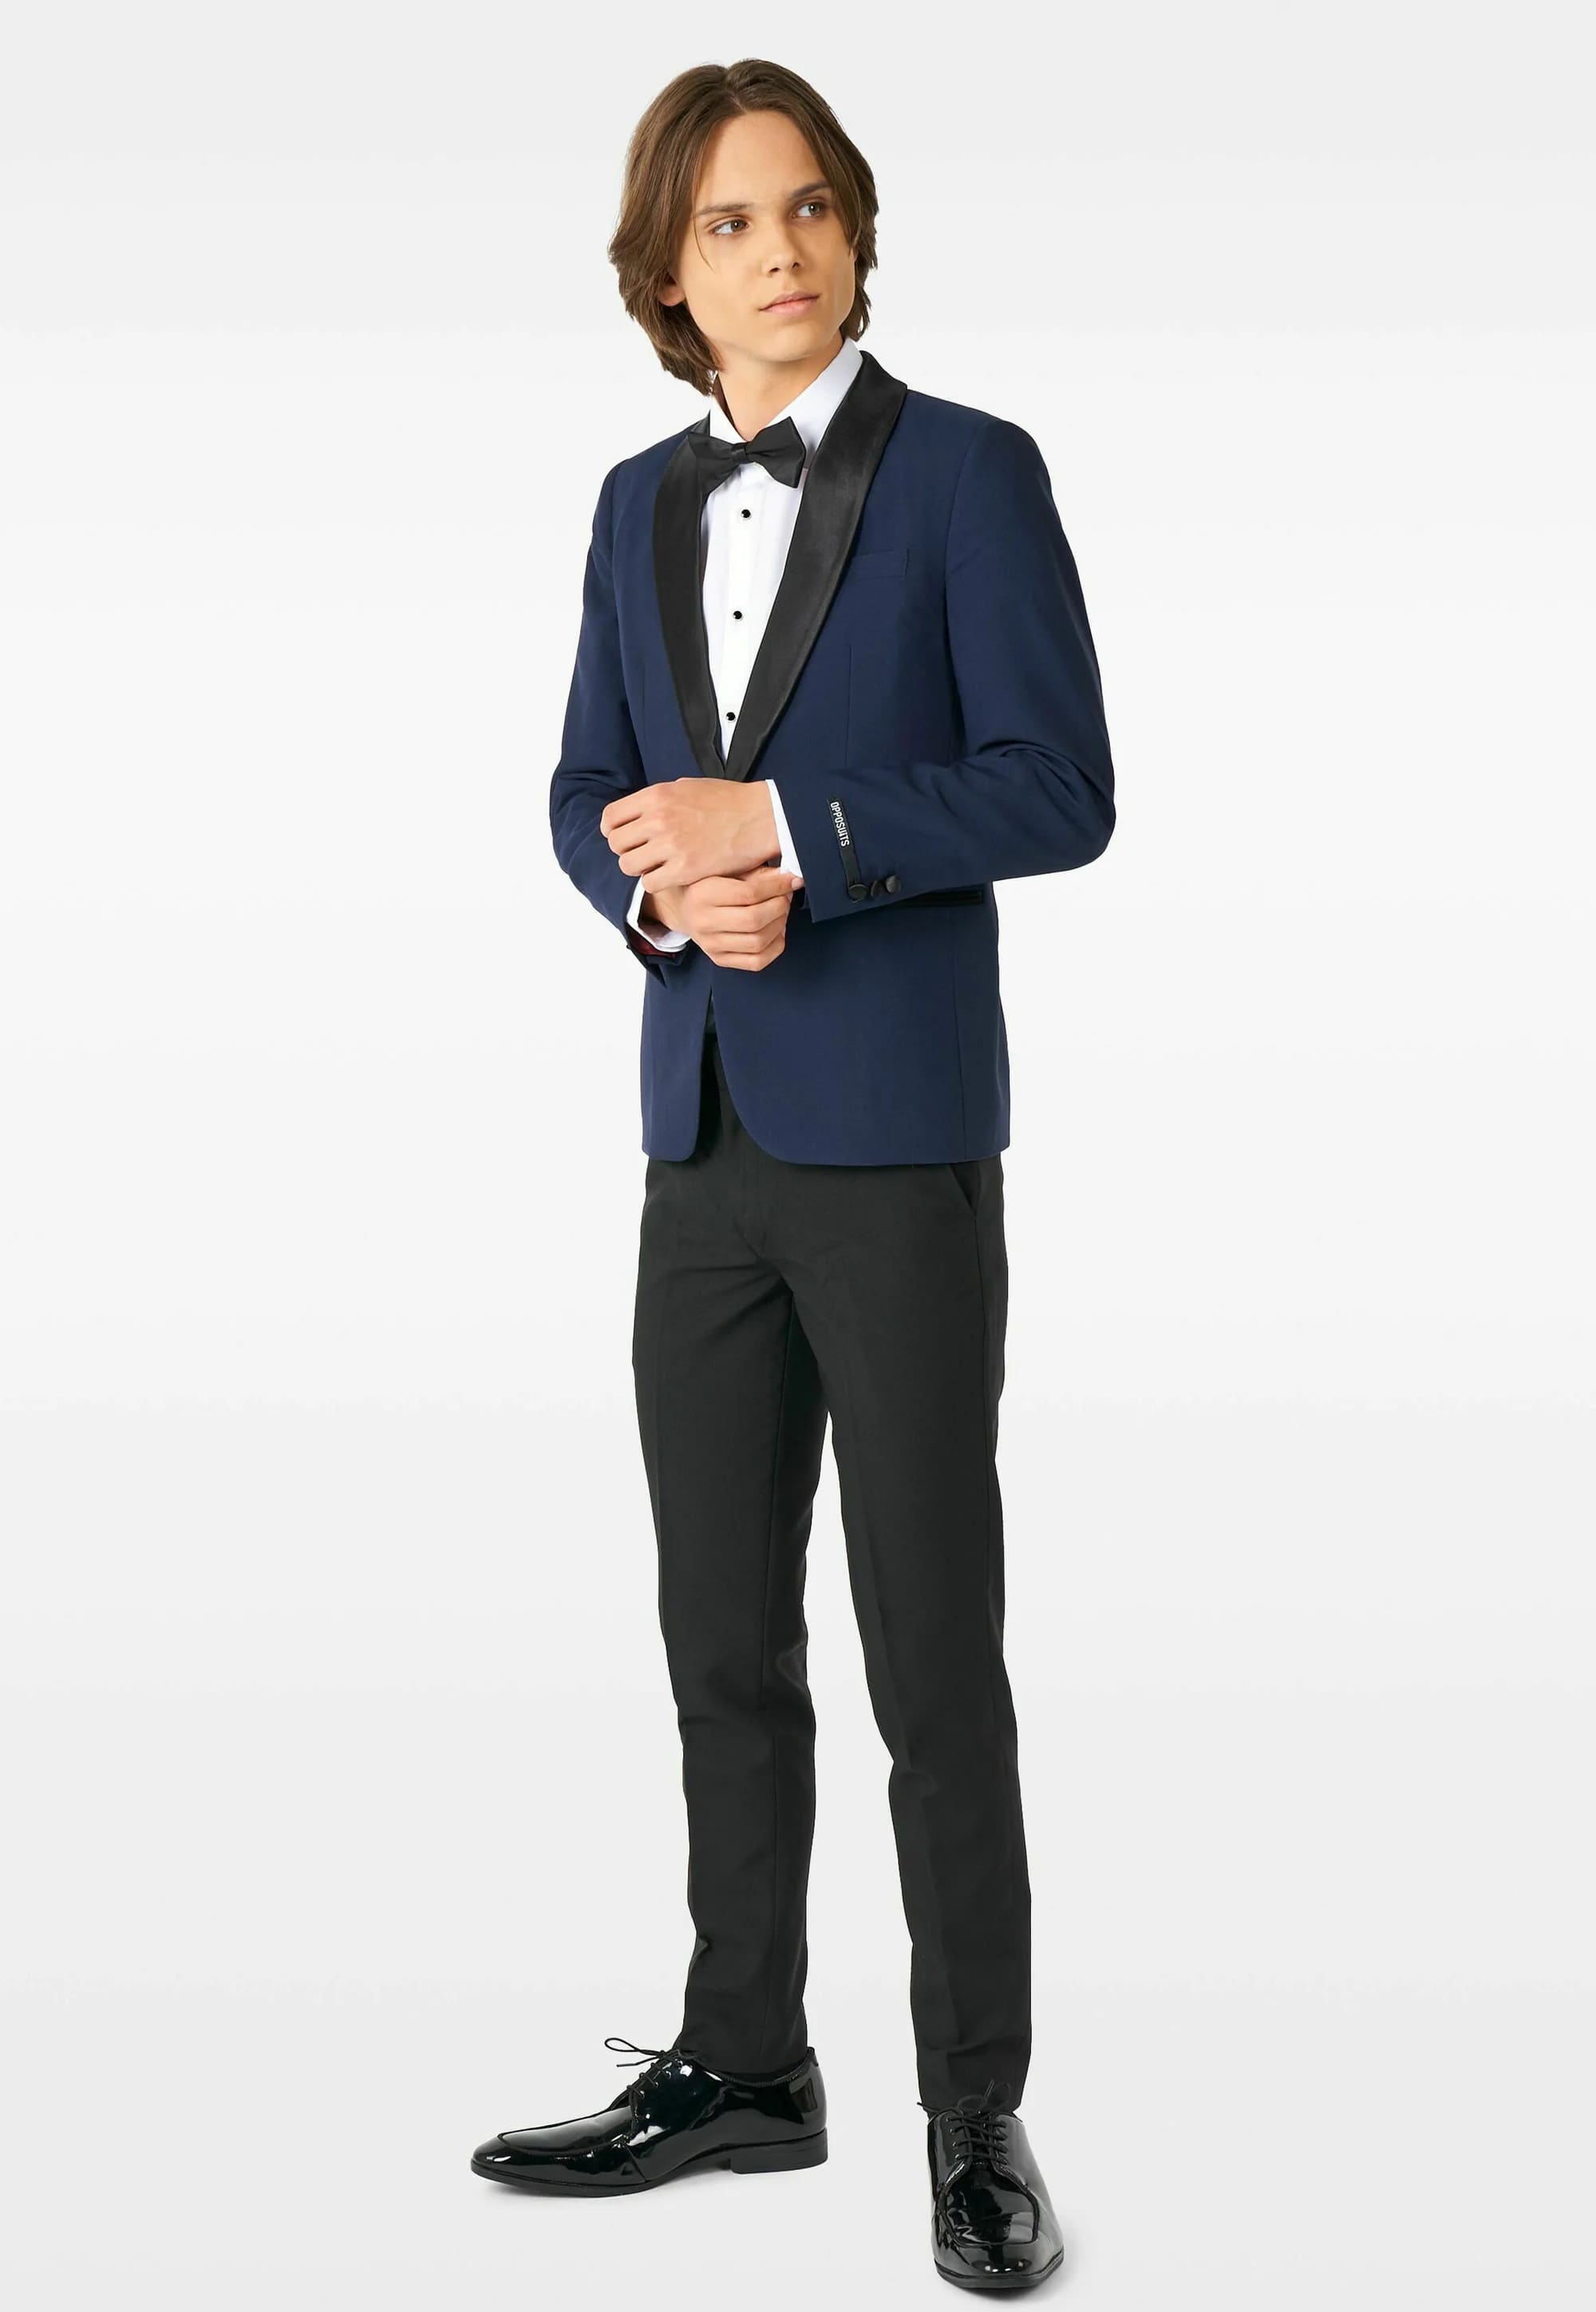 Комплект Opposuits Midnight, 3 предмета, темно-синий/черный комплект одежды пиджак и брюки нарядный стиль размер 98 синий